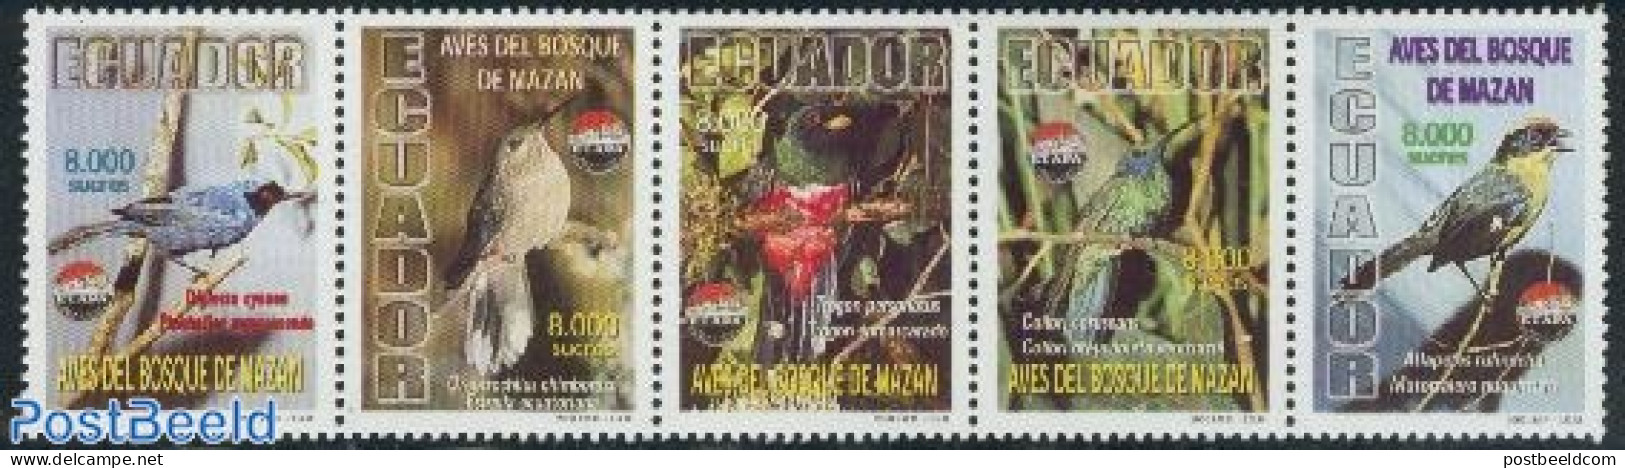 Ecuador 2000 ETAPA, Birds 5v[::::], Mint NH, Nature - Birds - Equateur